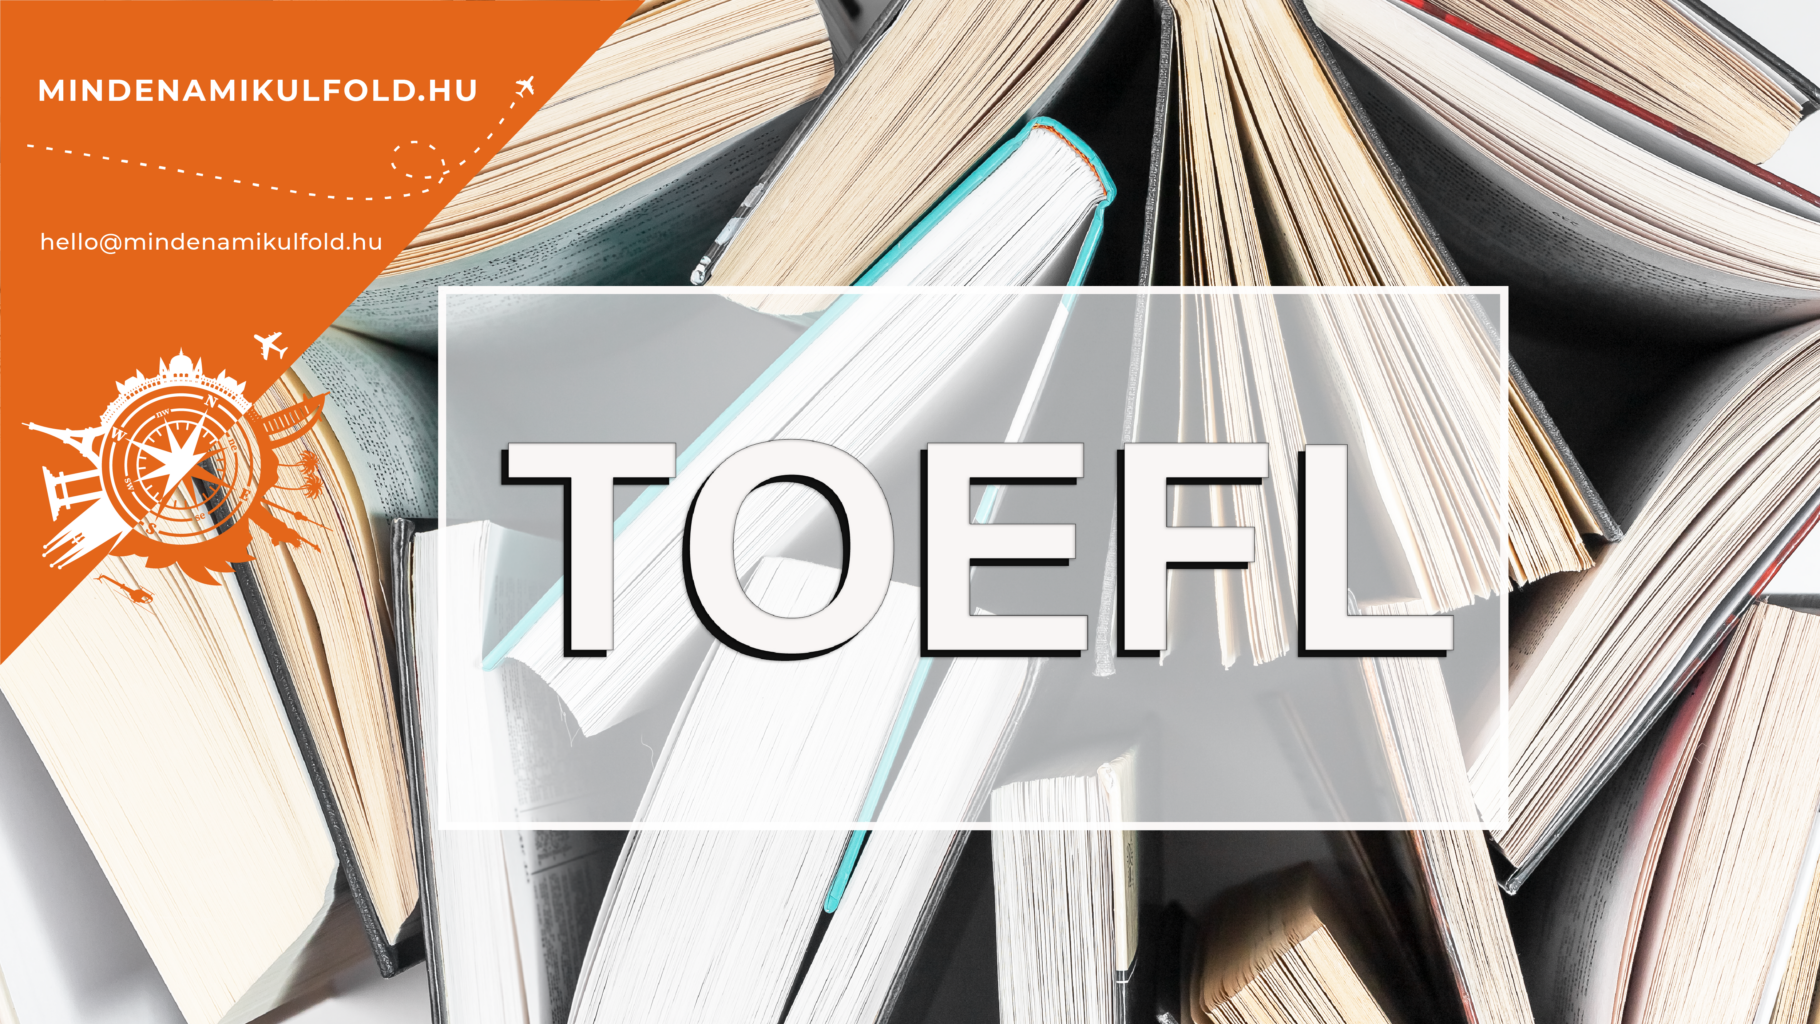 A TOEFL és az IELTS az angol nyelvi készségeidet értékeli. Te is észak-amerikai oktatási intézményekben tanulnál TOVÁBB? >>>